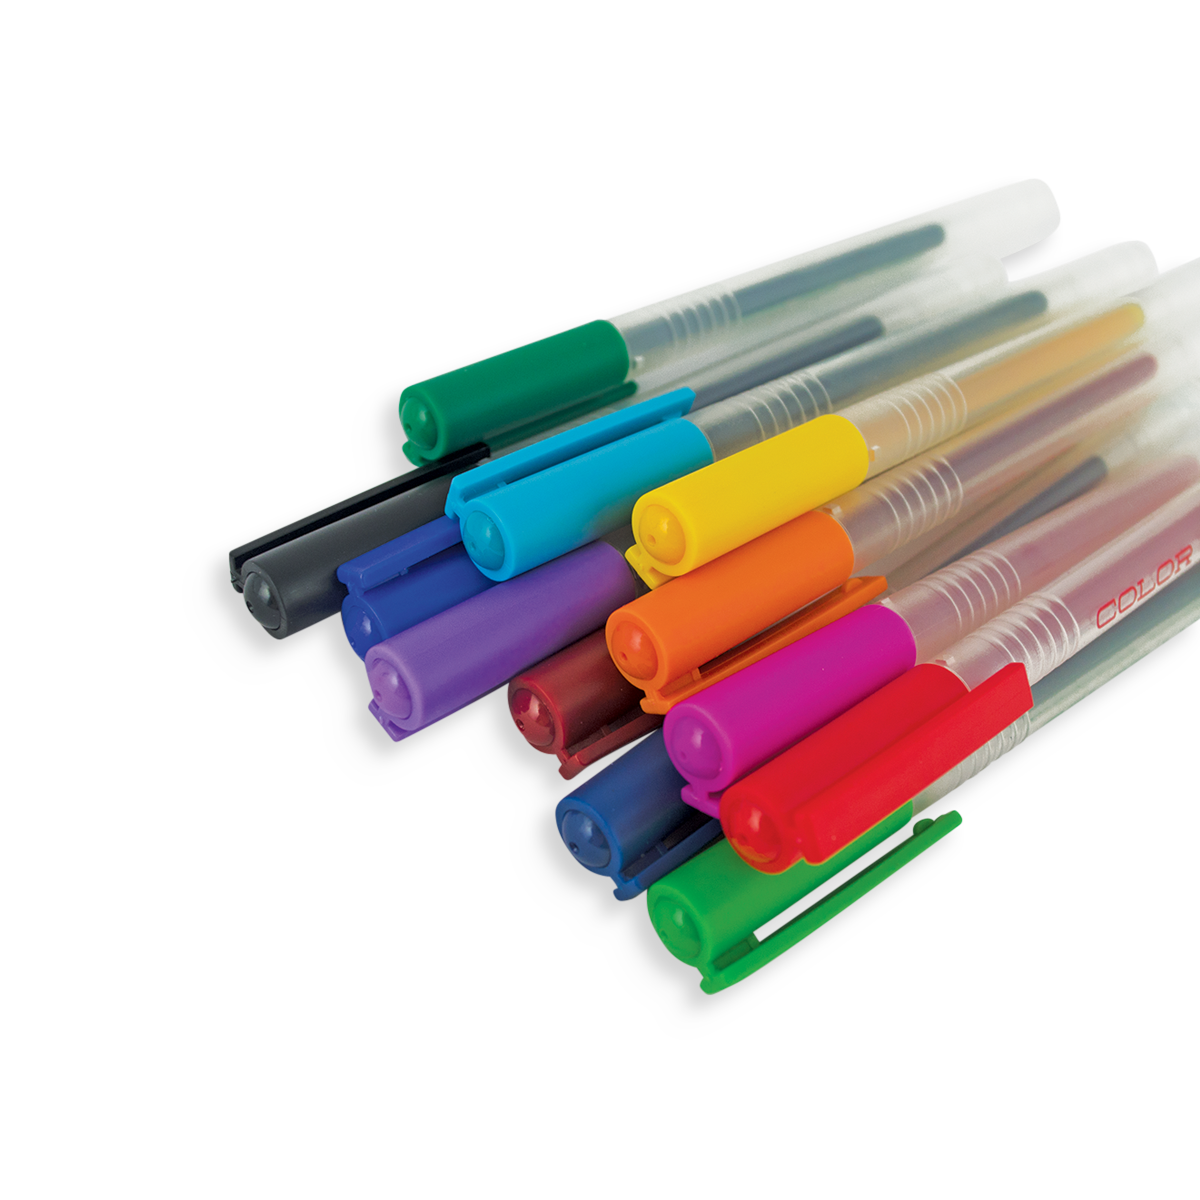 OOLY Color Luxe Gel Pens Gel Pens